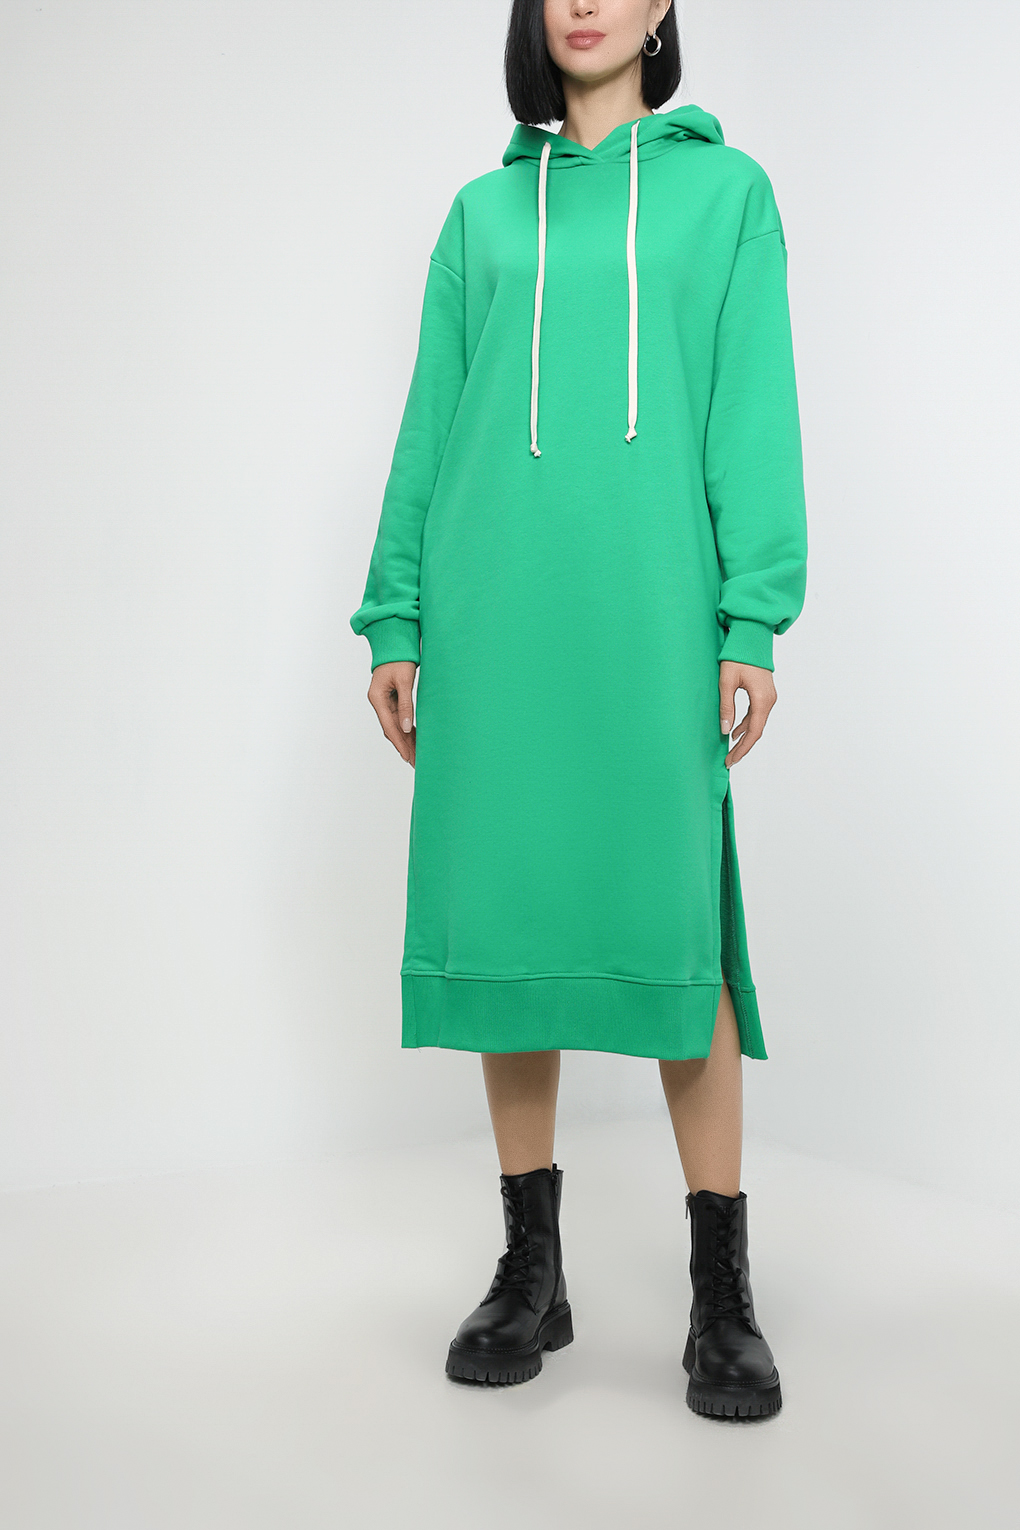 Платье женское Belucci BL23015311-004 зеленое XL